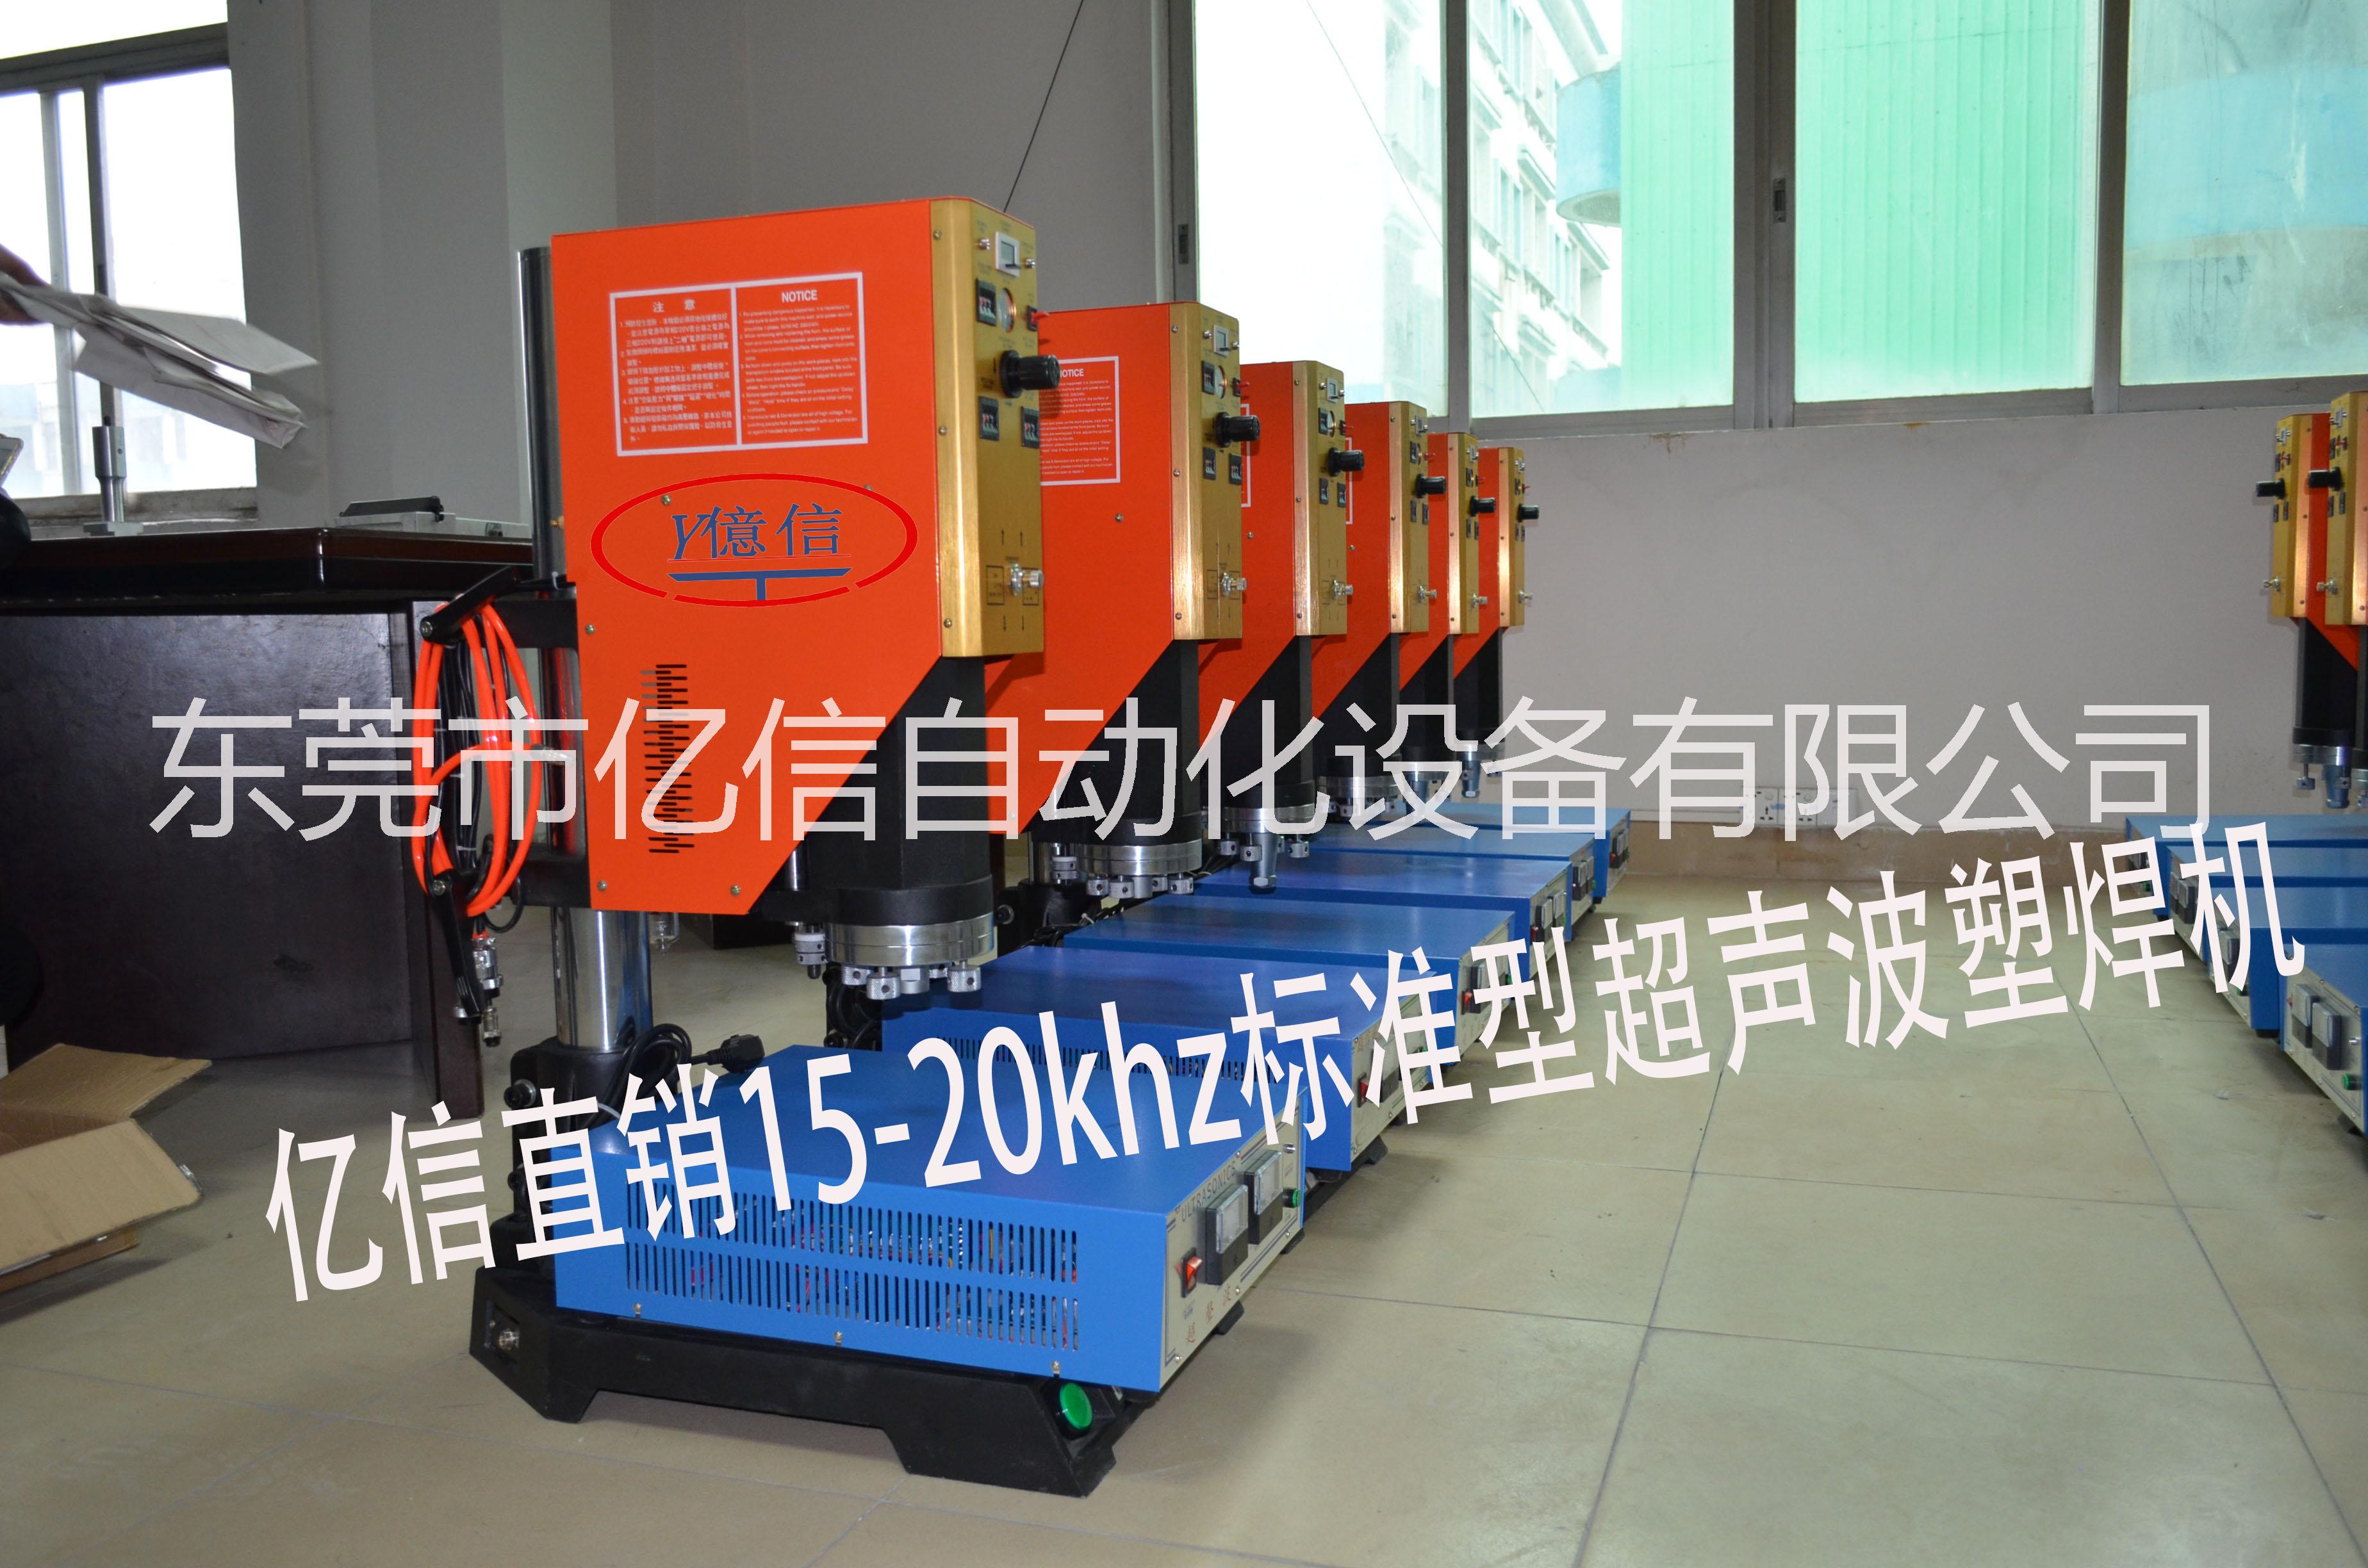 厂家供应超声波焊接机15-20khz标准型超声波塑料焊接机